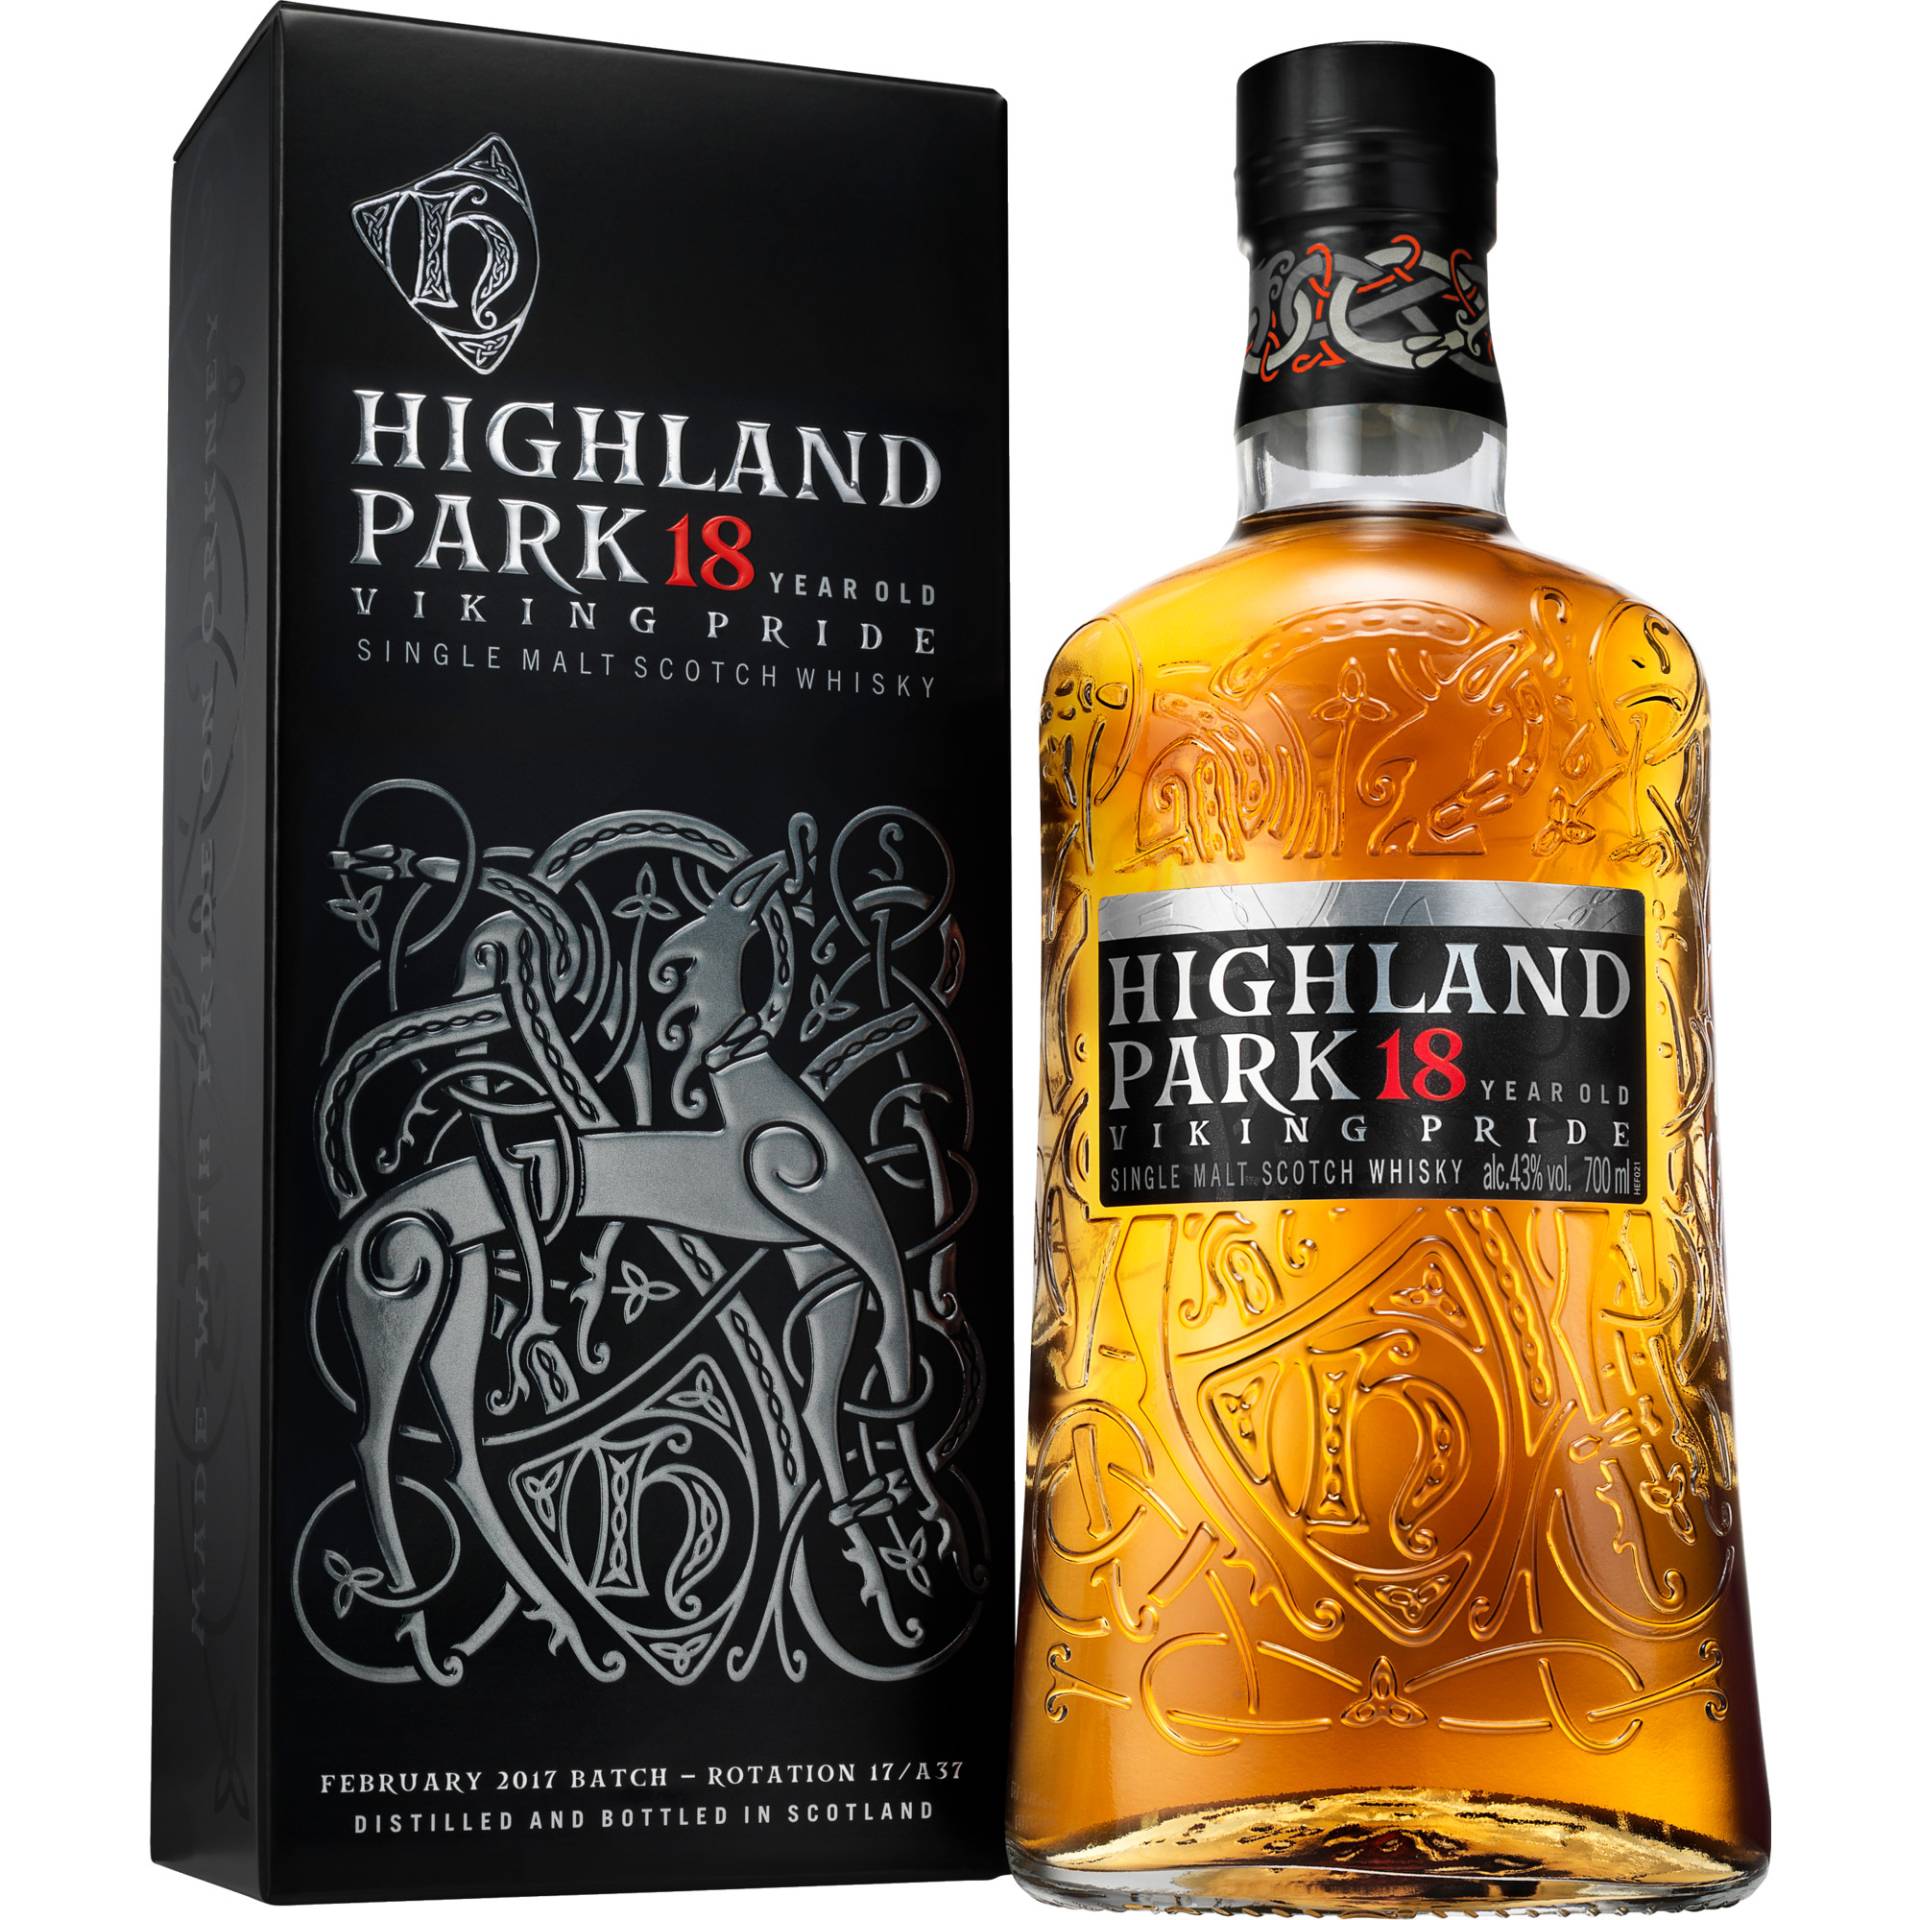 Highland Park 18 Years Single Malt Scotch Whisky, 0,7 L, 43% Vol., Schottland, Spirituosen von The Edrington Group, 2500 Great Western Roas, Glasgow, G15 6RW, Scotland